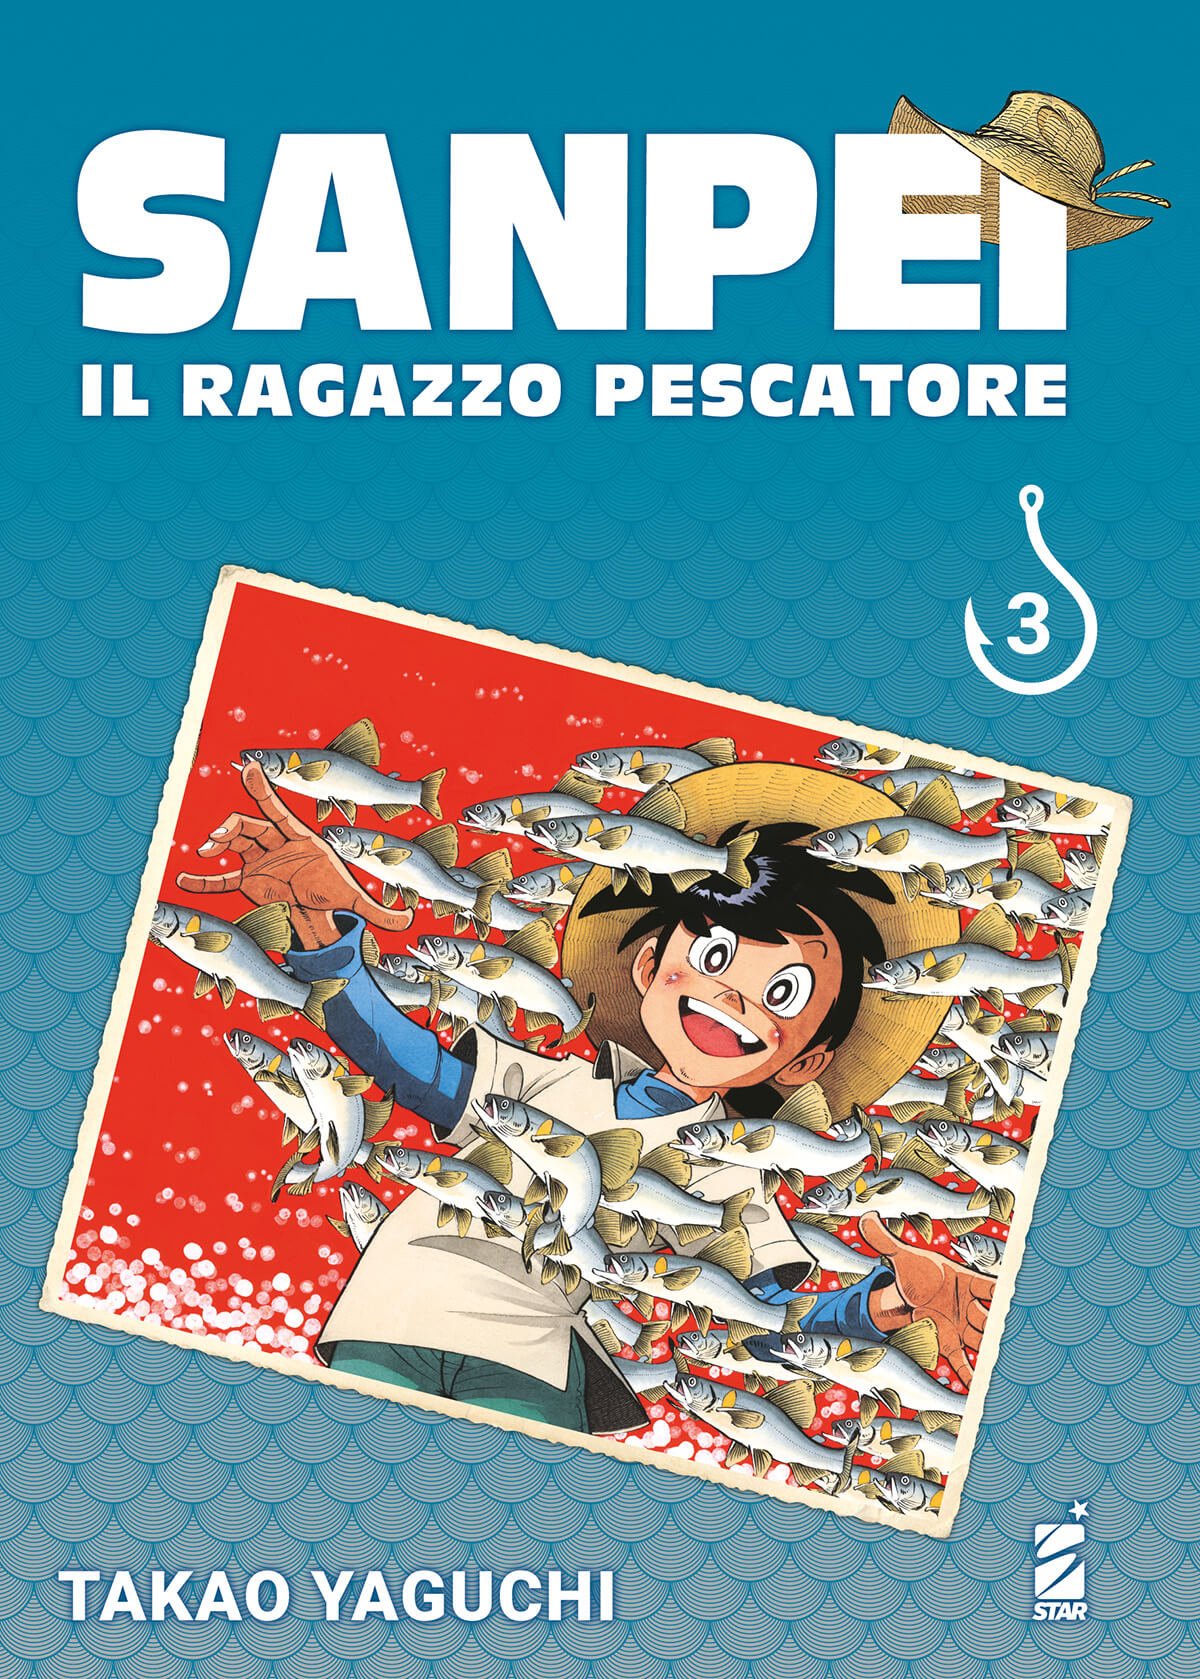 Sanpei Il Ragazzo Pescatore Tribue Edition 3, tra le uscite manga Star Comics del 23 novembre 2022